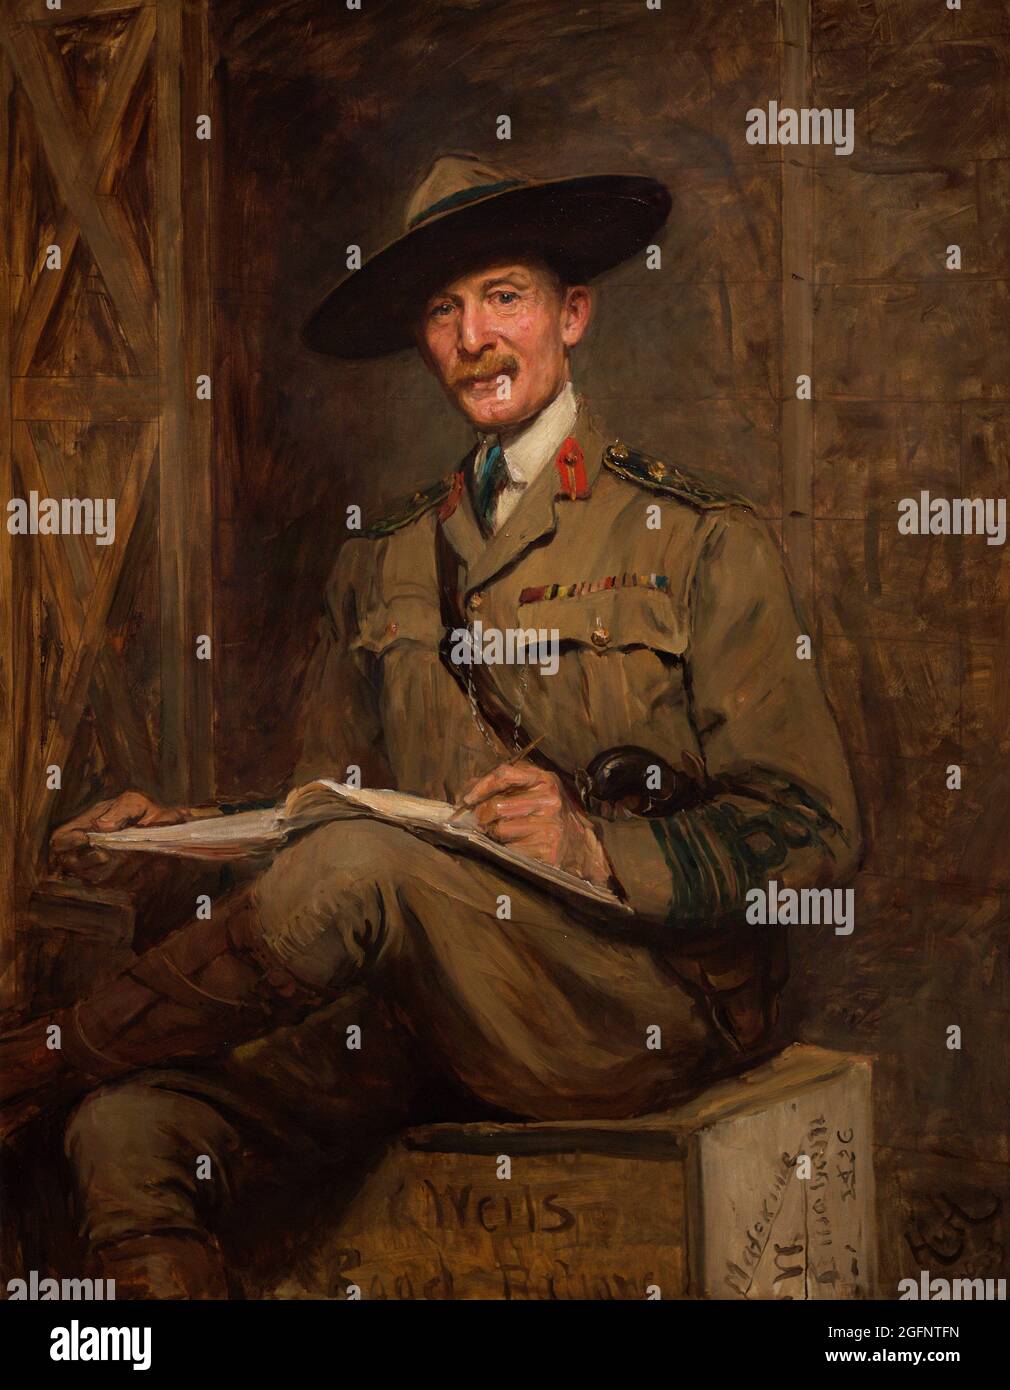 Robert Baden-Powell, primo barone Baden-Powell (1857-1941). Generale e scrittore britannico. Fondatore dei boy Scouts e delle guide delle ragazze. Ritratto di Sir Hubert von Herkomer (1849-1914). Olio su tela (141,9 x 112,1 cm), 1903. National Portrait Gallery. Londra, Inghilterra, Regno Unito. Foto Stock